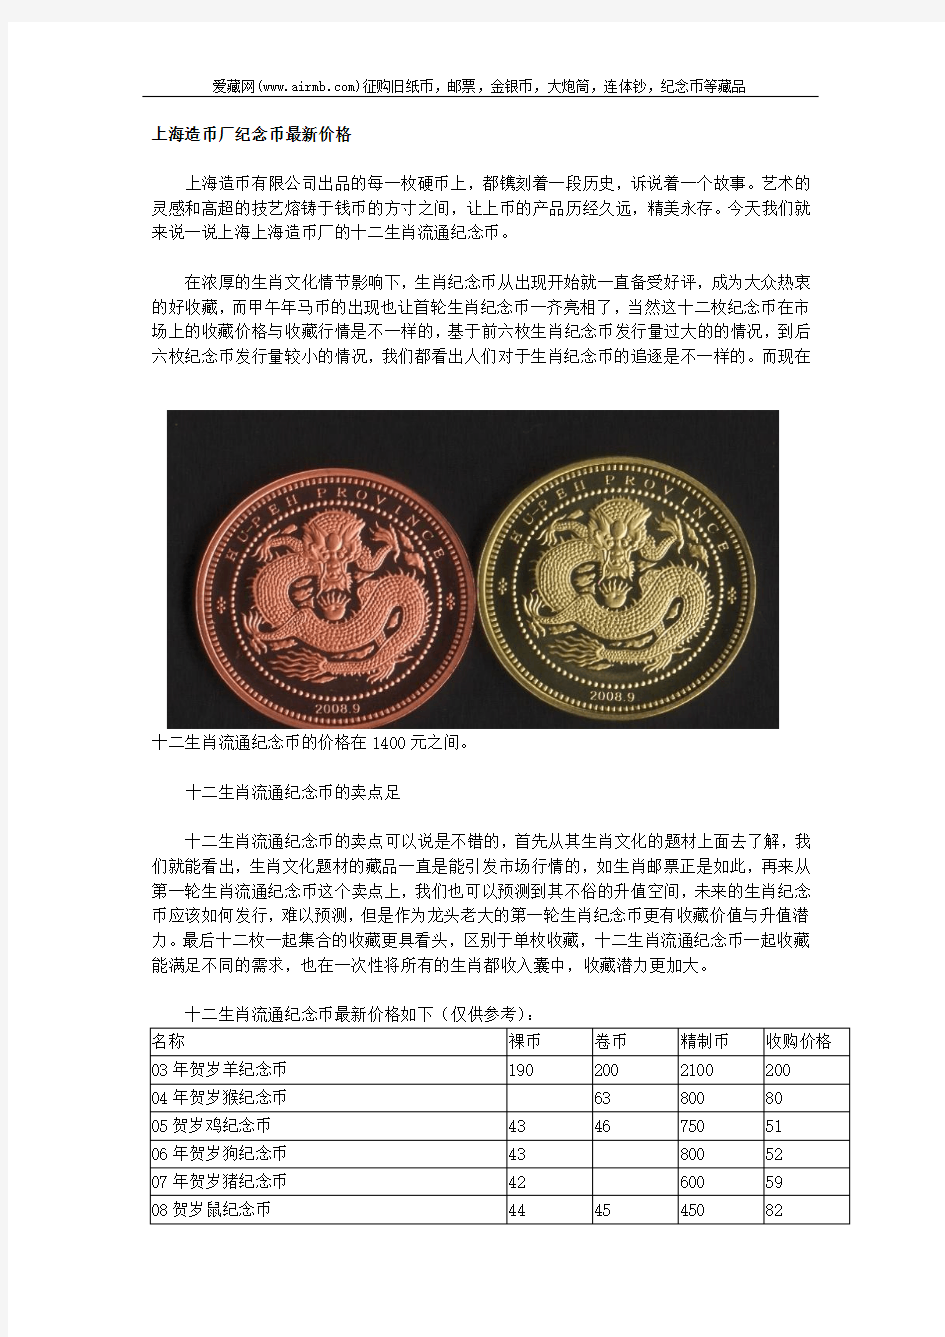 上海造币厂纪念币最新价格